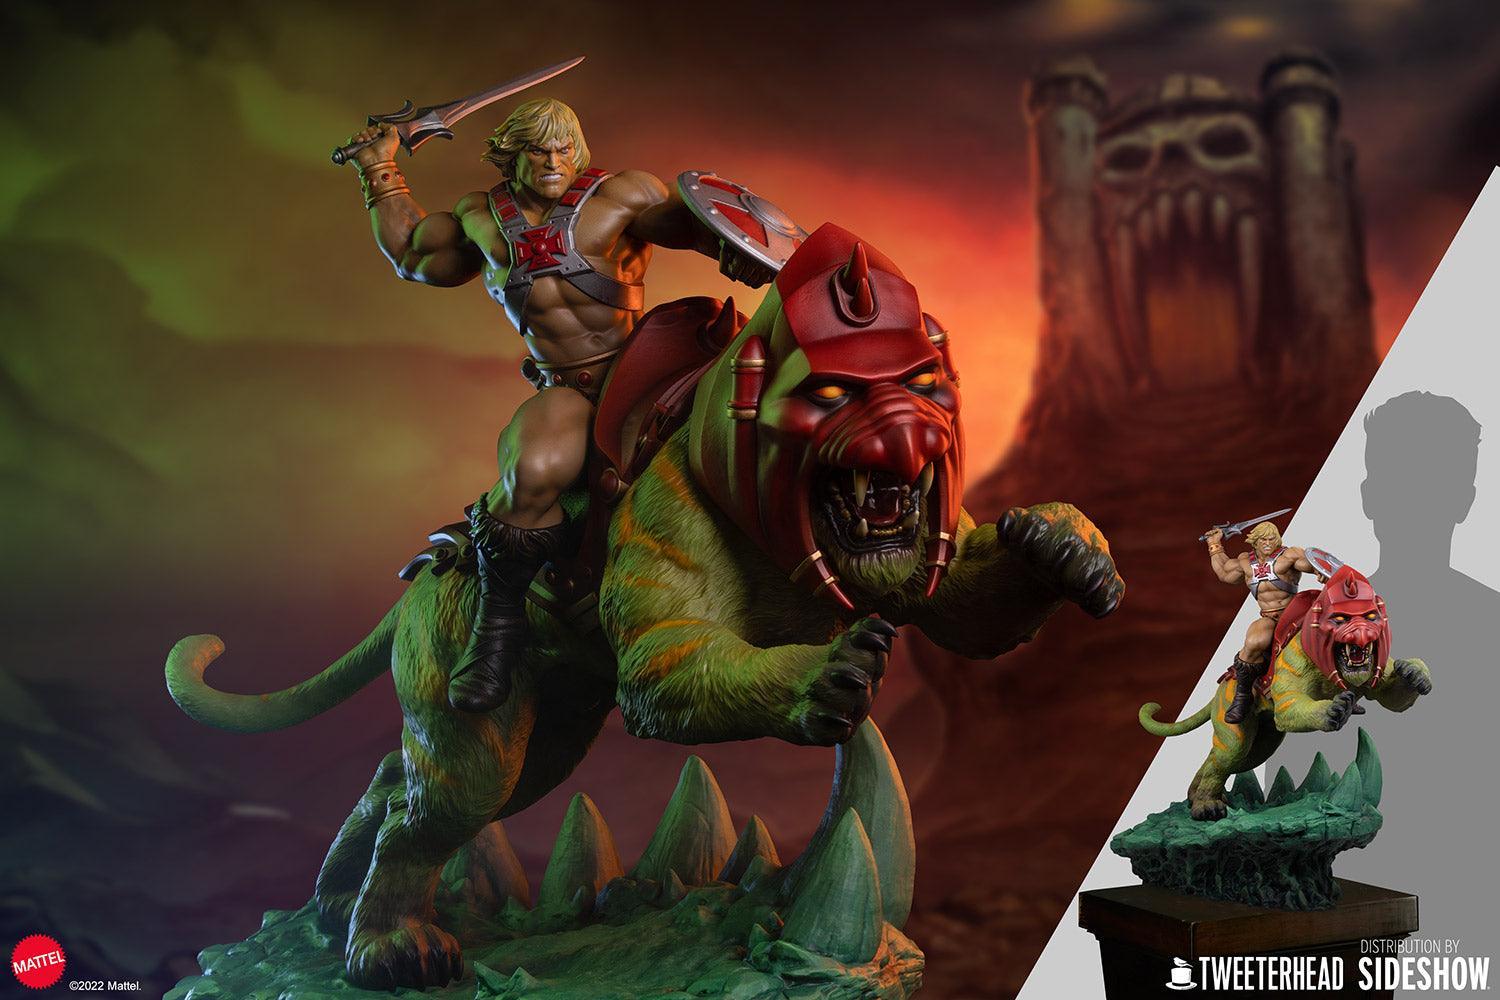 TWE909511 Masters of the Universe - He-Man & Battle Cat Deluxe Maquette - Tweeterhead - Titan Pop Culture